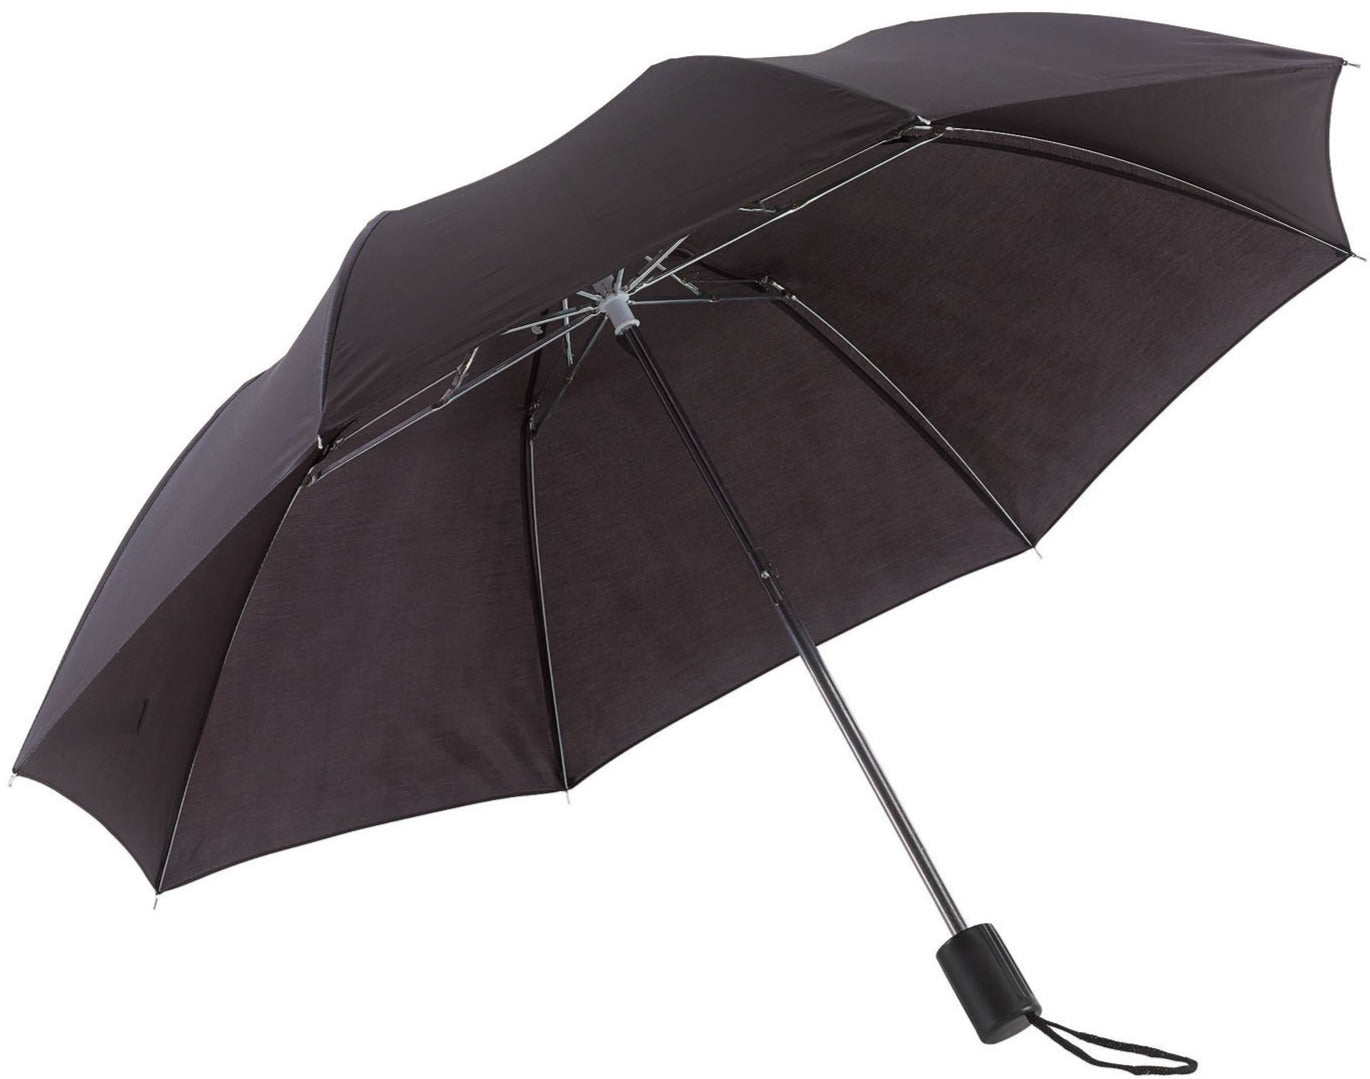 Μαύρη Ομπρέλα Βροχής, Σπαστή, Απλή, και σε πολλά χρώματα (κωδικός 01-02-0209).